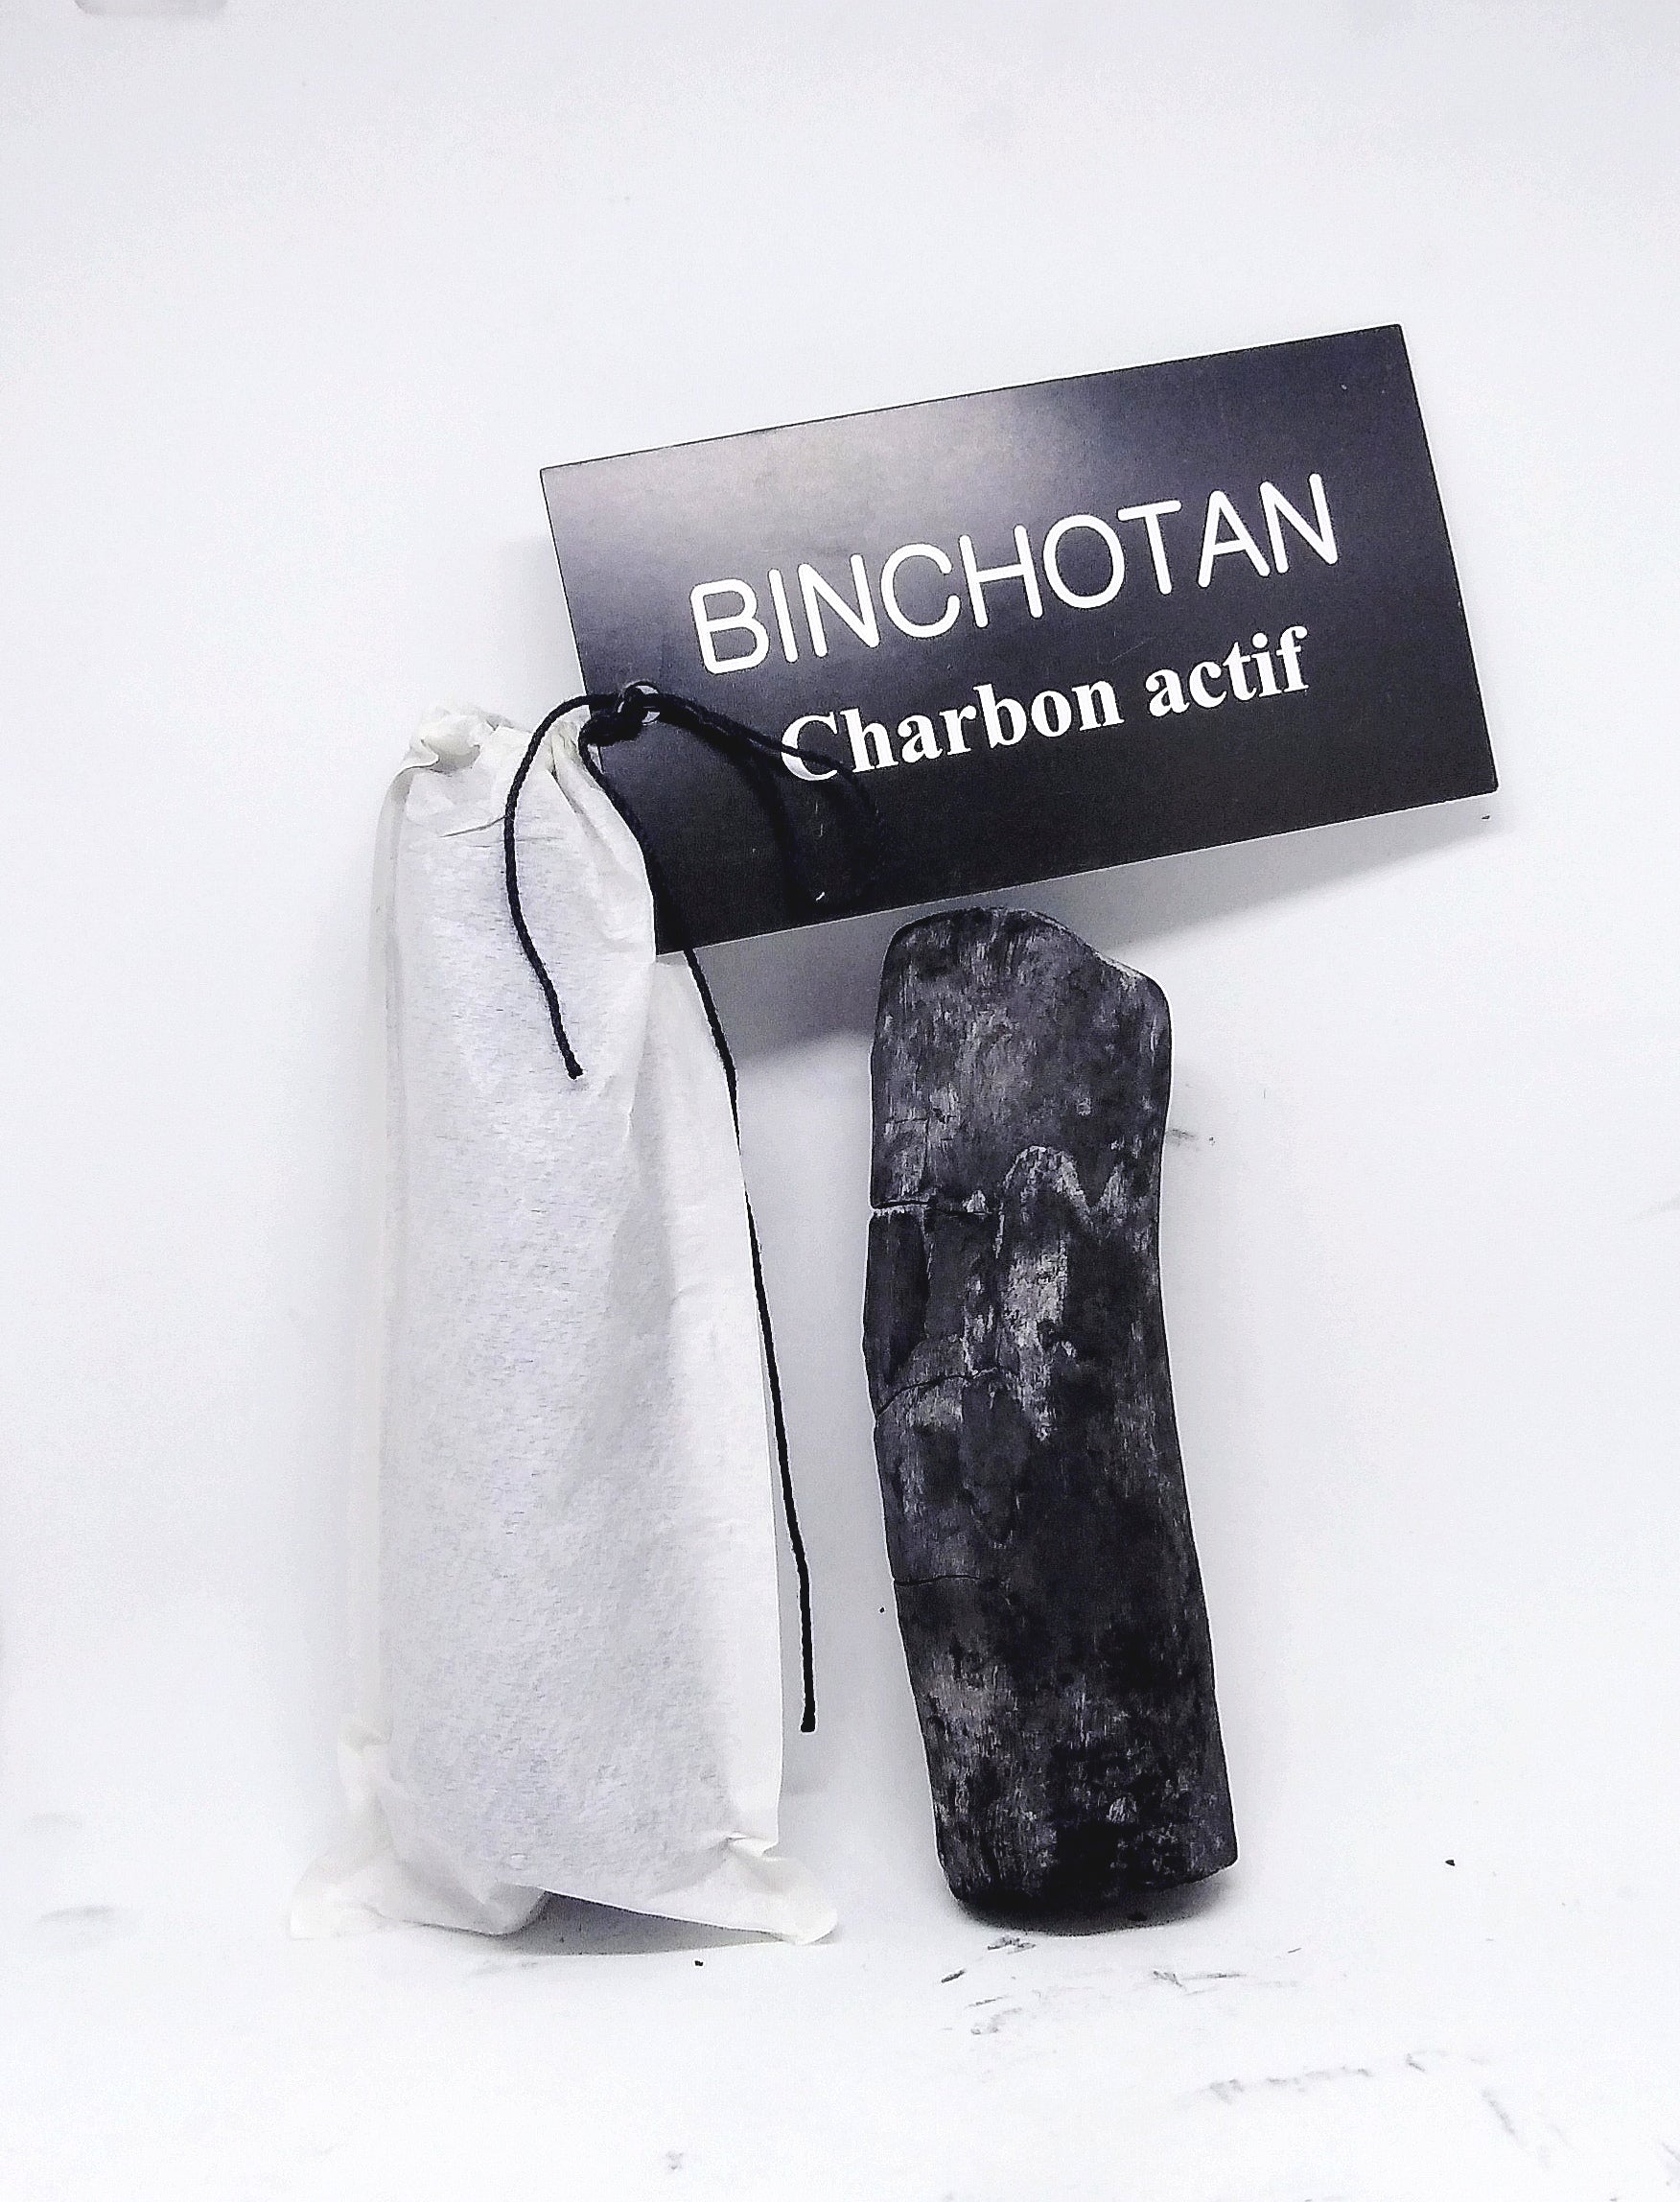 Lot de charbons actifs Binchotan - Sans emballage